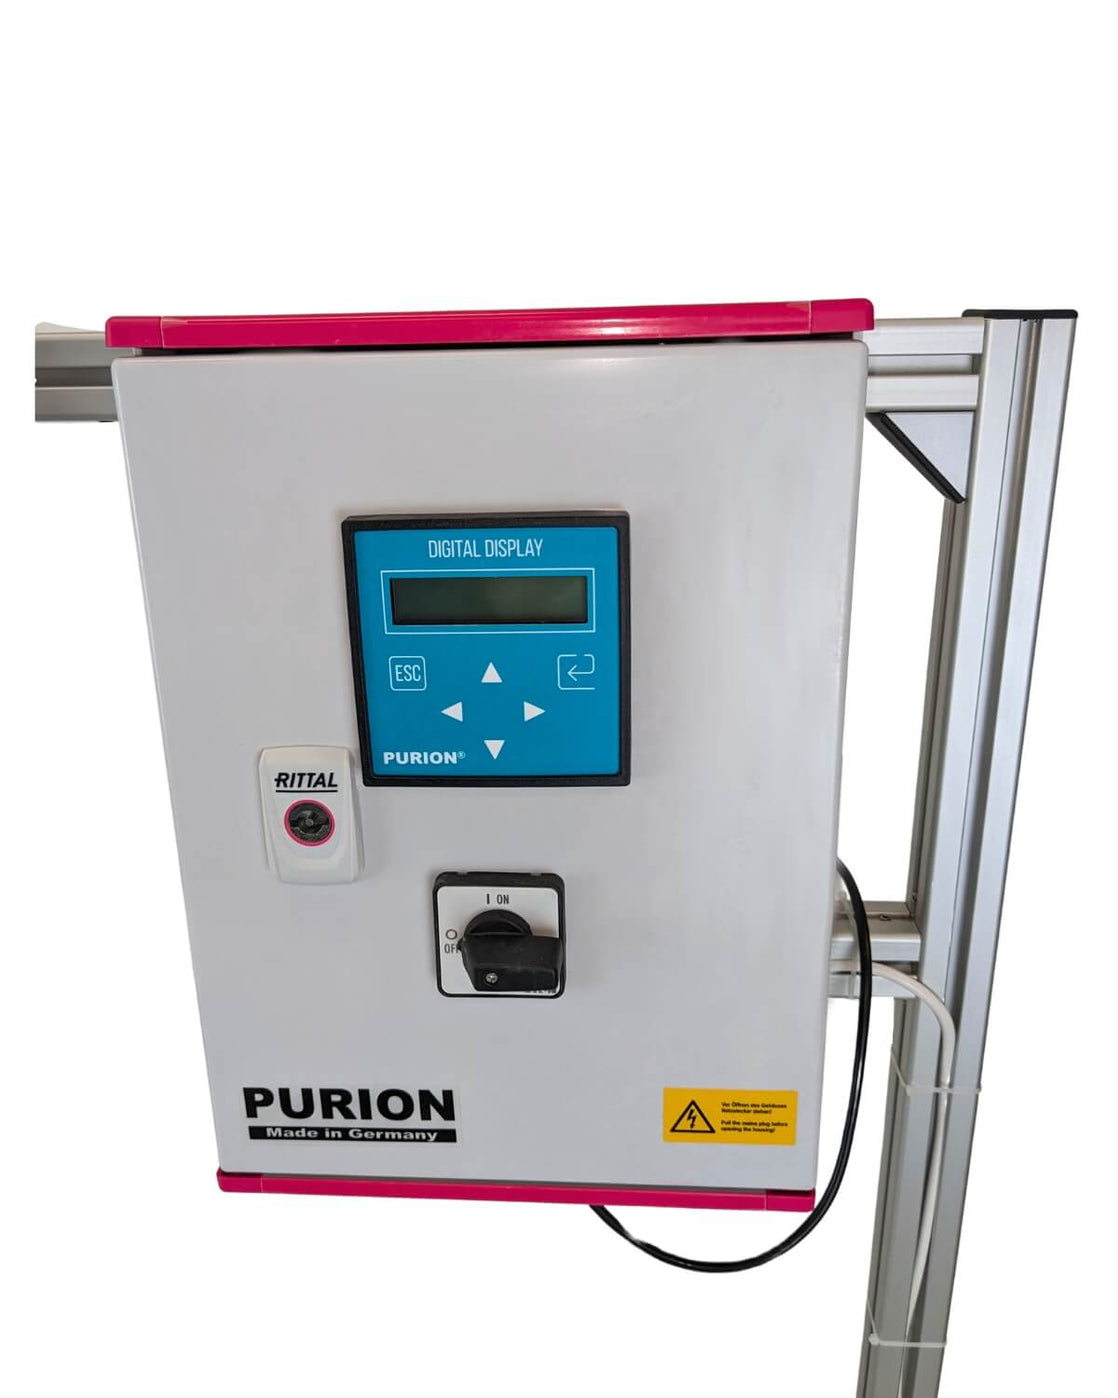 PURION DVGW Zert. der Purion GmbH All in One ist eine hocheffiziente UVC-Anlage, die durch ihr fortschrittliches Rückspülfiltersystem für eine wirksame Desinfektion von Trinkwasser sorgt.